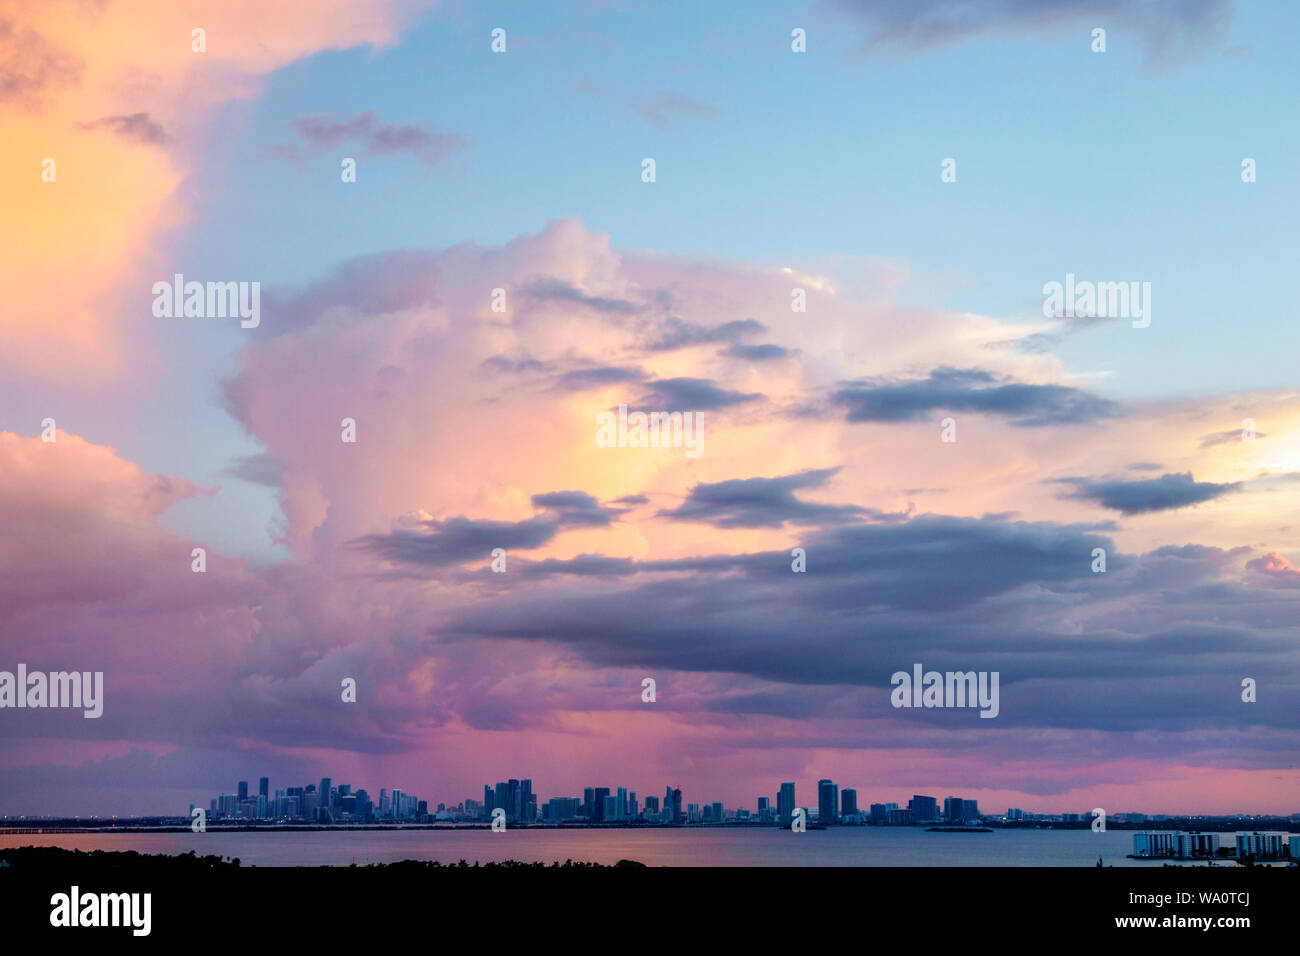 Miami Beach Florida, Biscayne Bay Water, nuvole tempo cielo tempesta nuvole, pioggia, skyline della città, tramonto, visitatori viaggio viaggio turistico turismo landmar Foto Stock